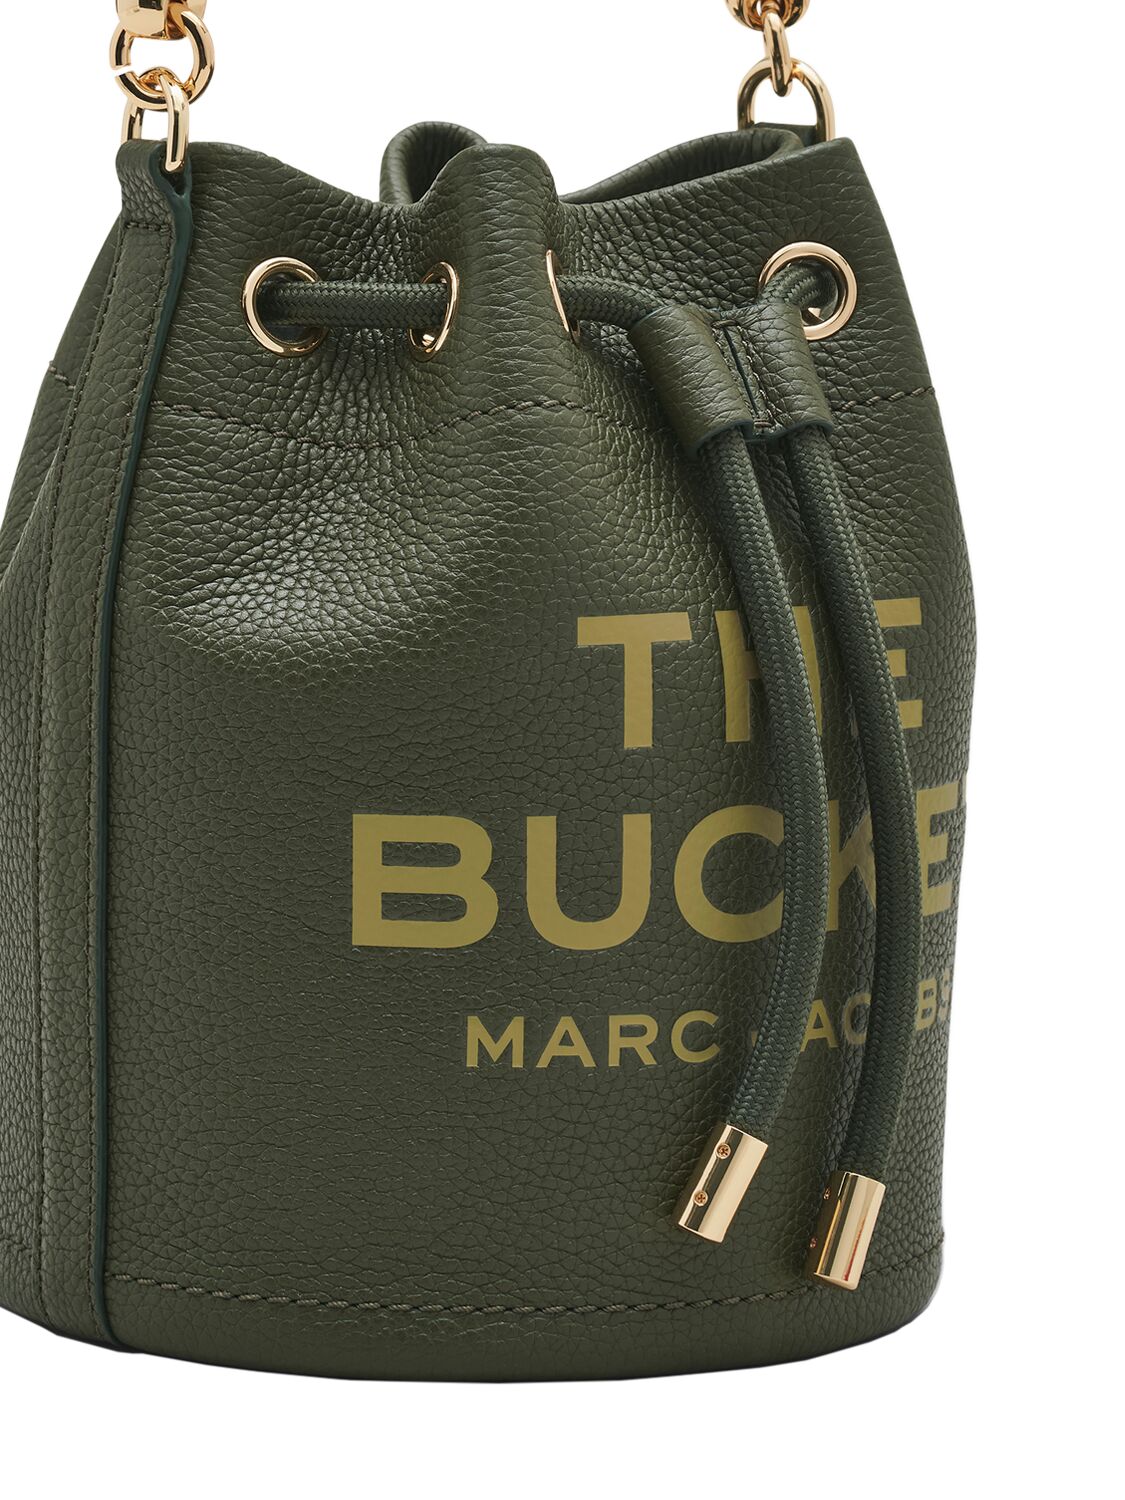 THE BUCKET皮革手提包